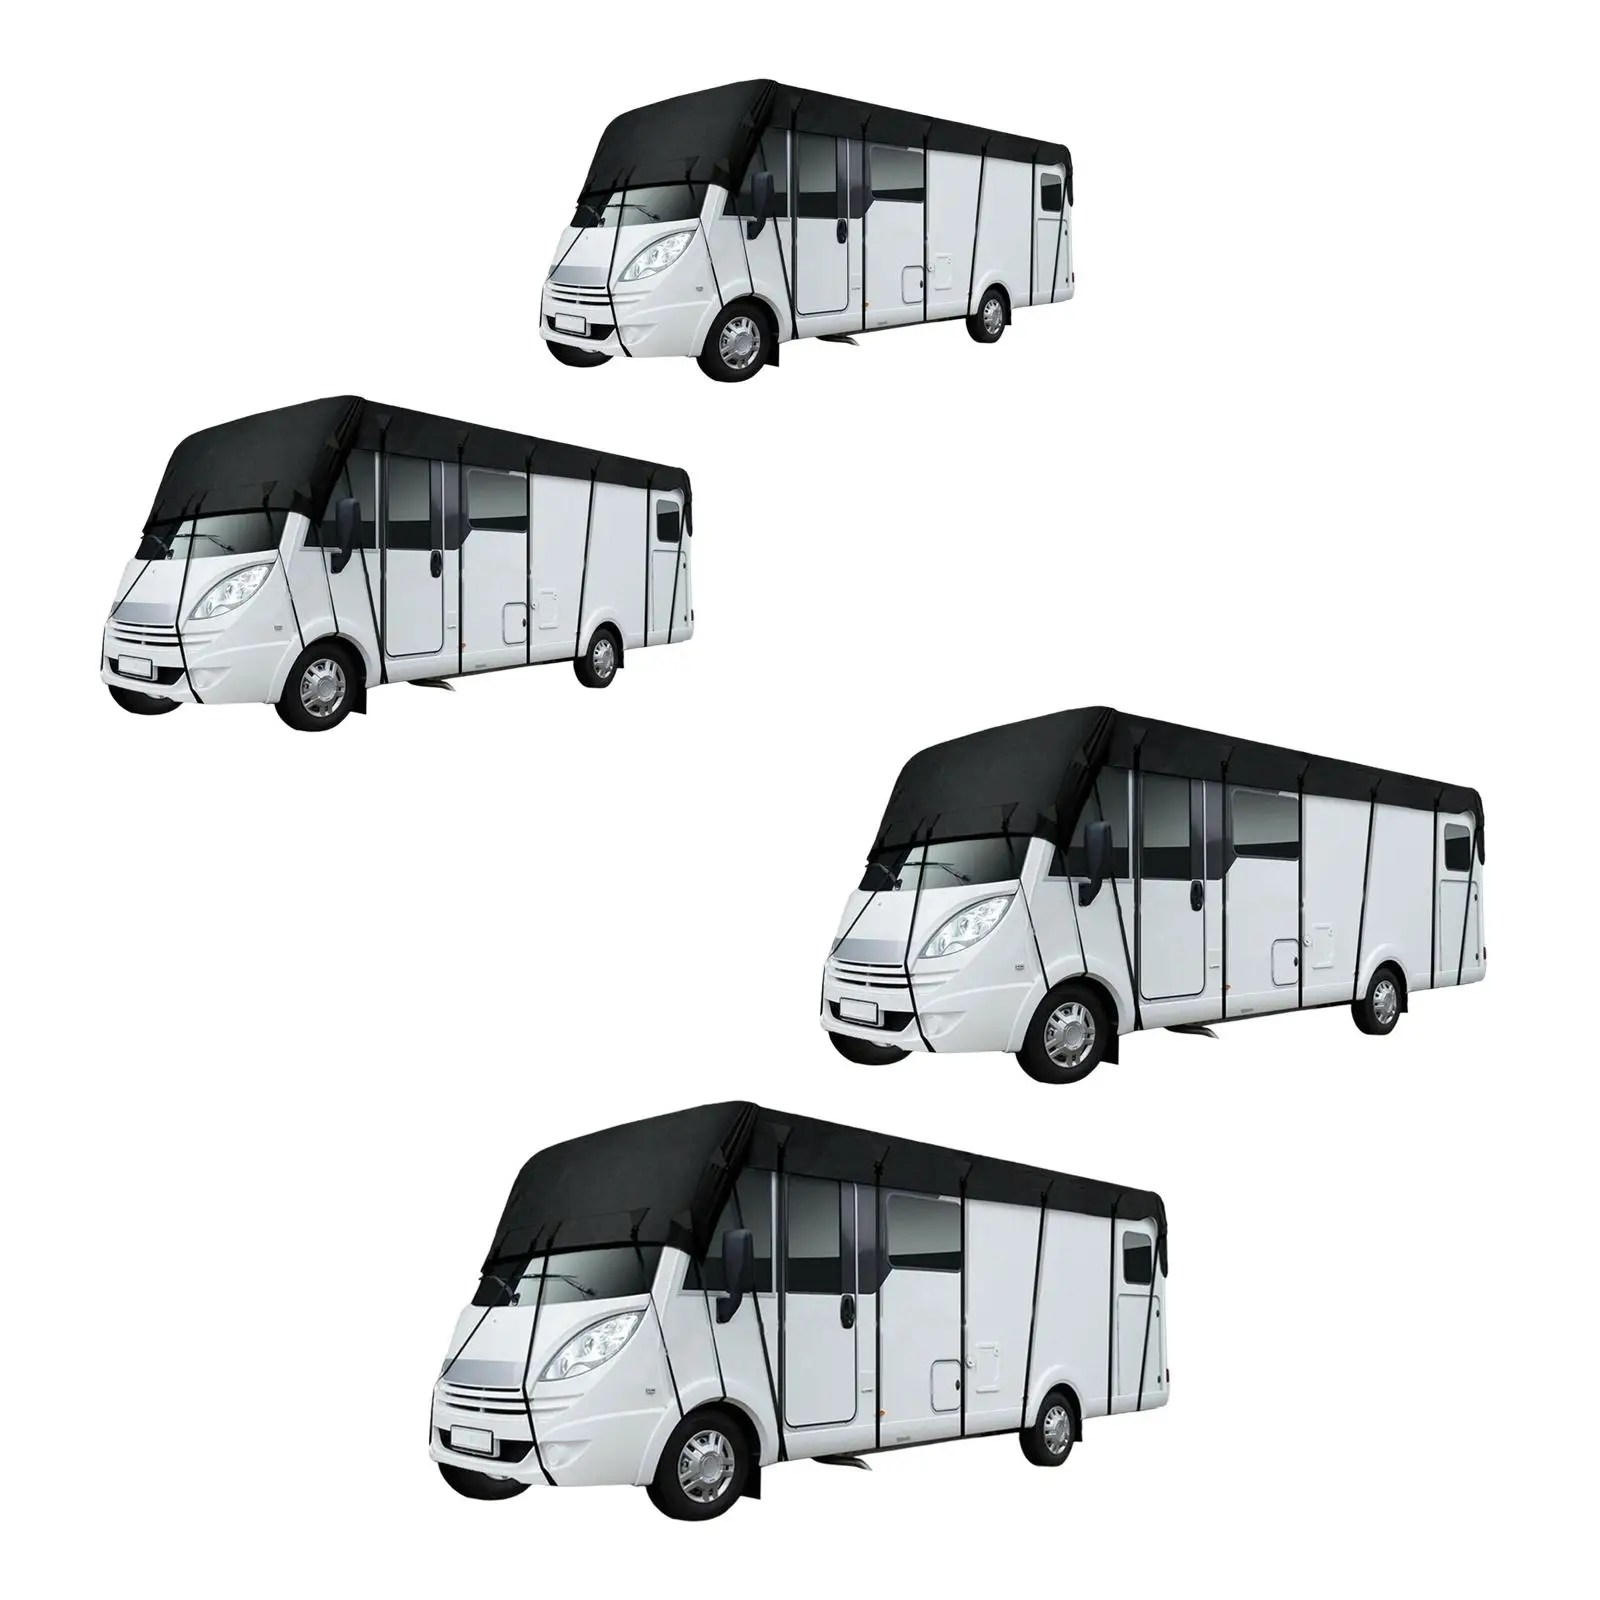 Upgraded RV Caravan Roof Cover Dustproof Wear Resistant for Outdoor Travel Caravan